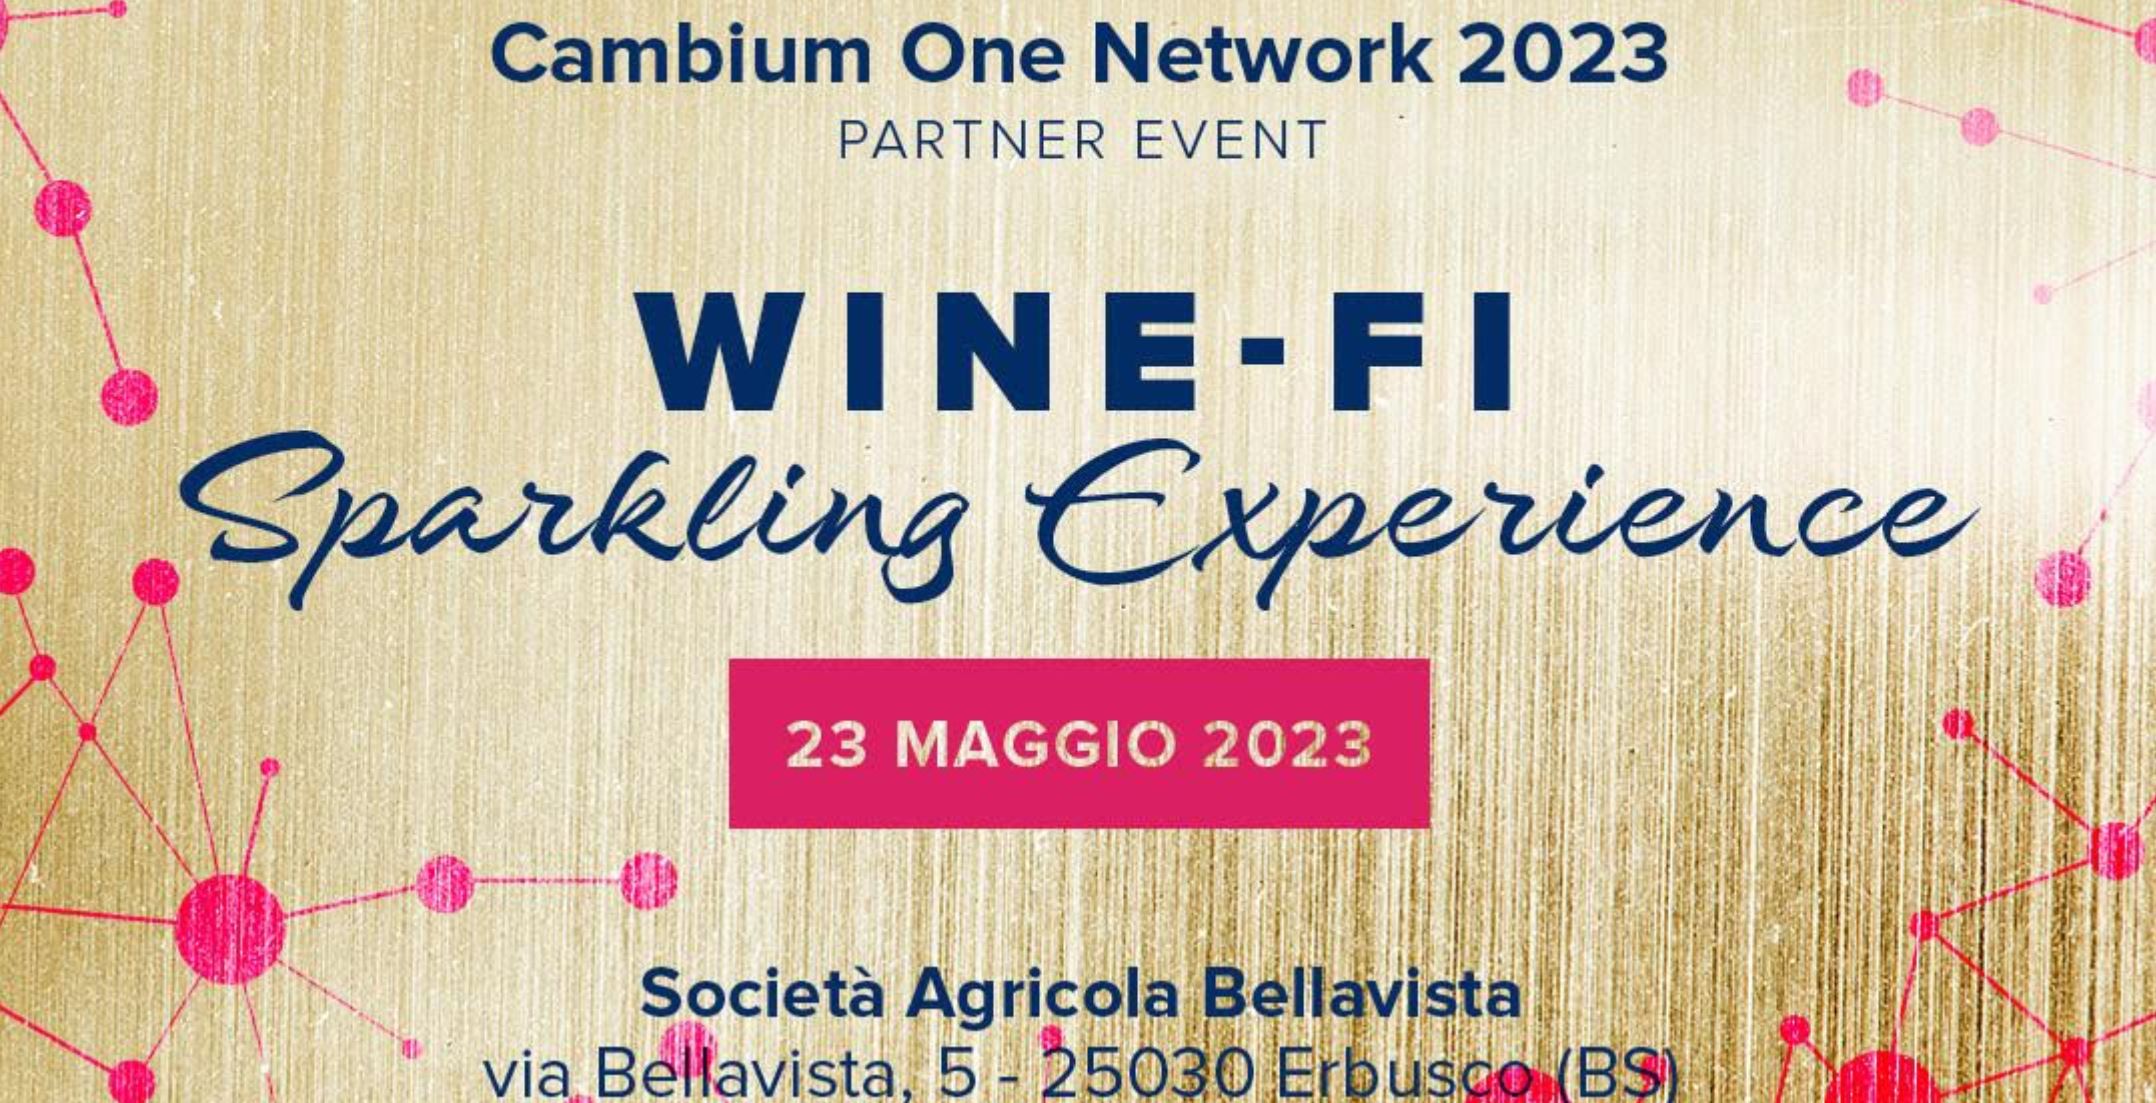 Cambium Networks presenta “WINE-FI”, il partner event 2023